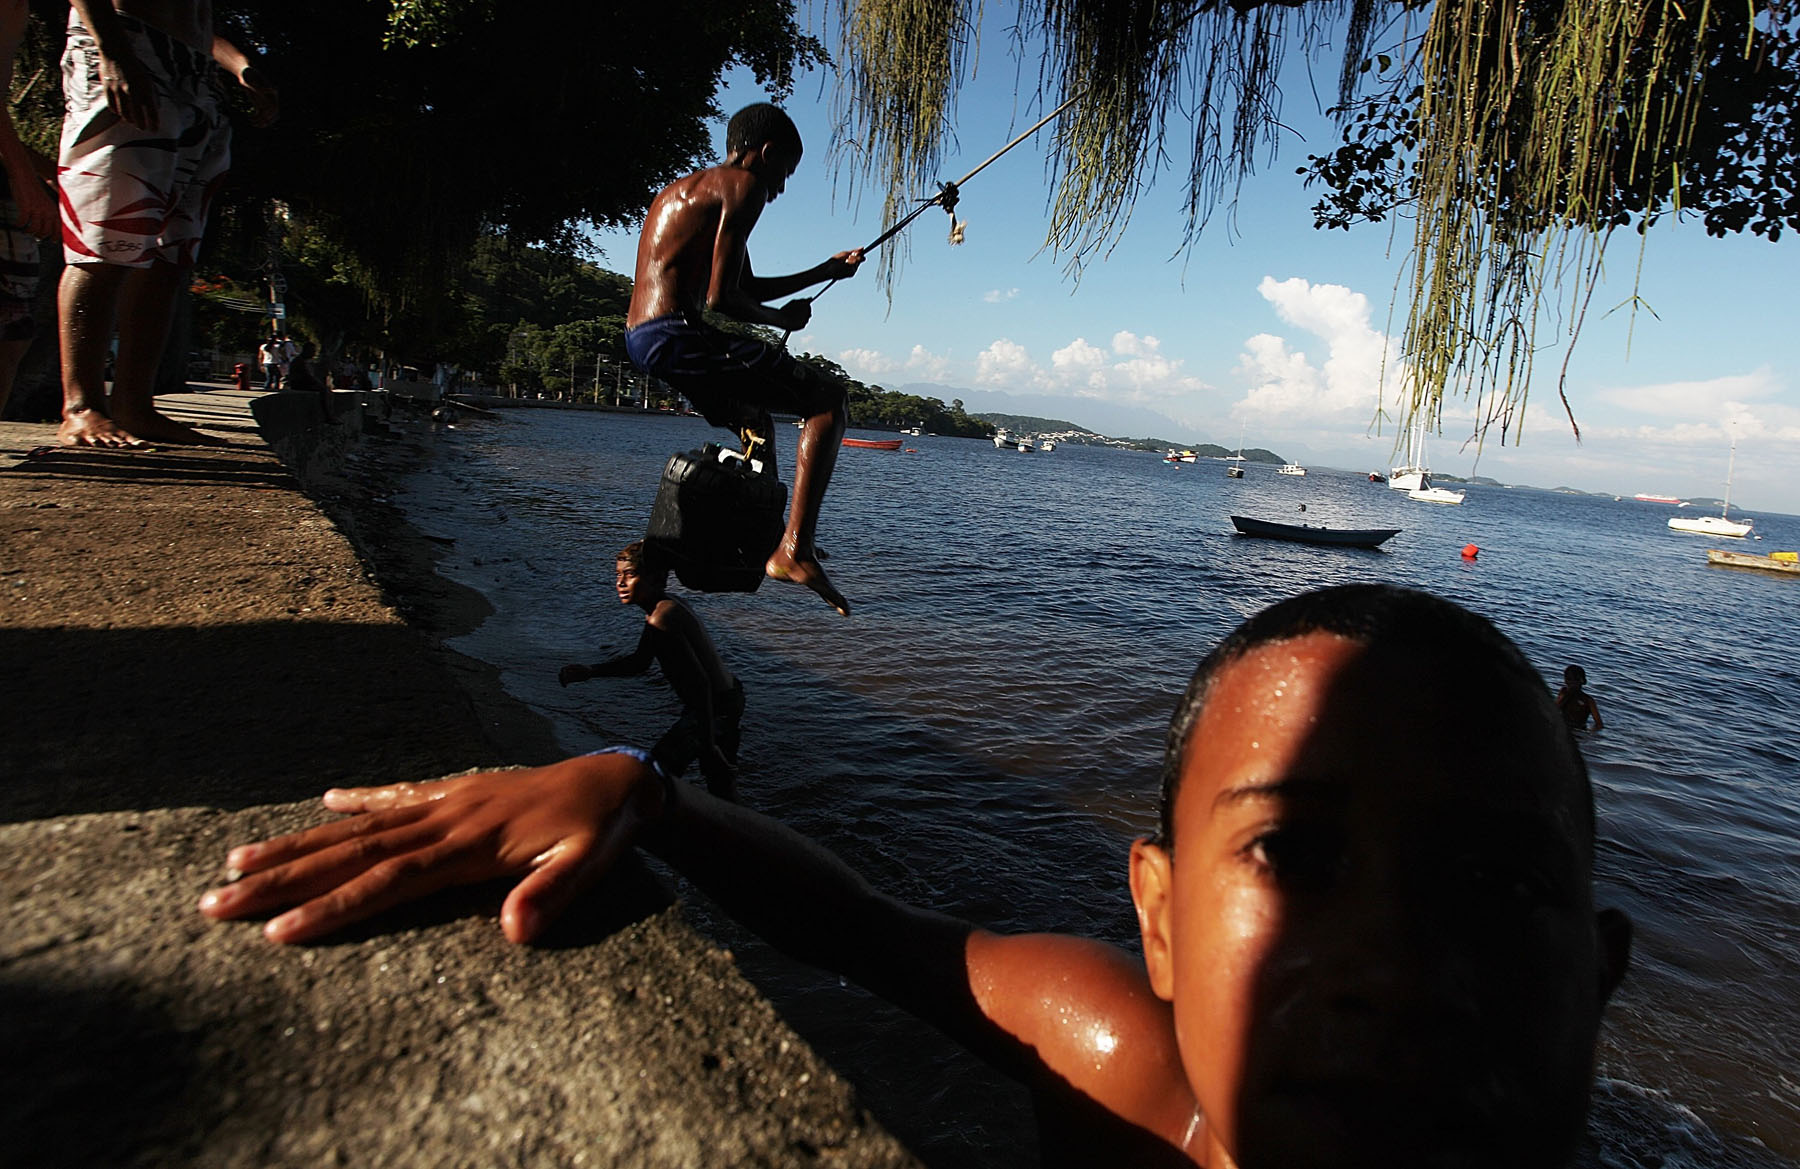 Kids play along the shoreline of Guanabara Bay in the Ilha do Governador neighborhood of Rio de Janeiro on Jan. 21, 2014.